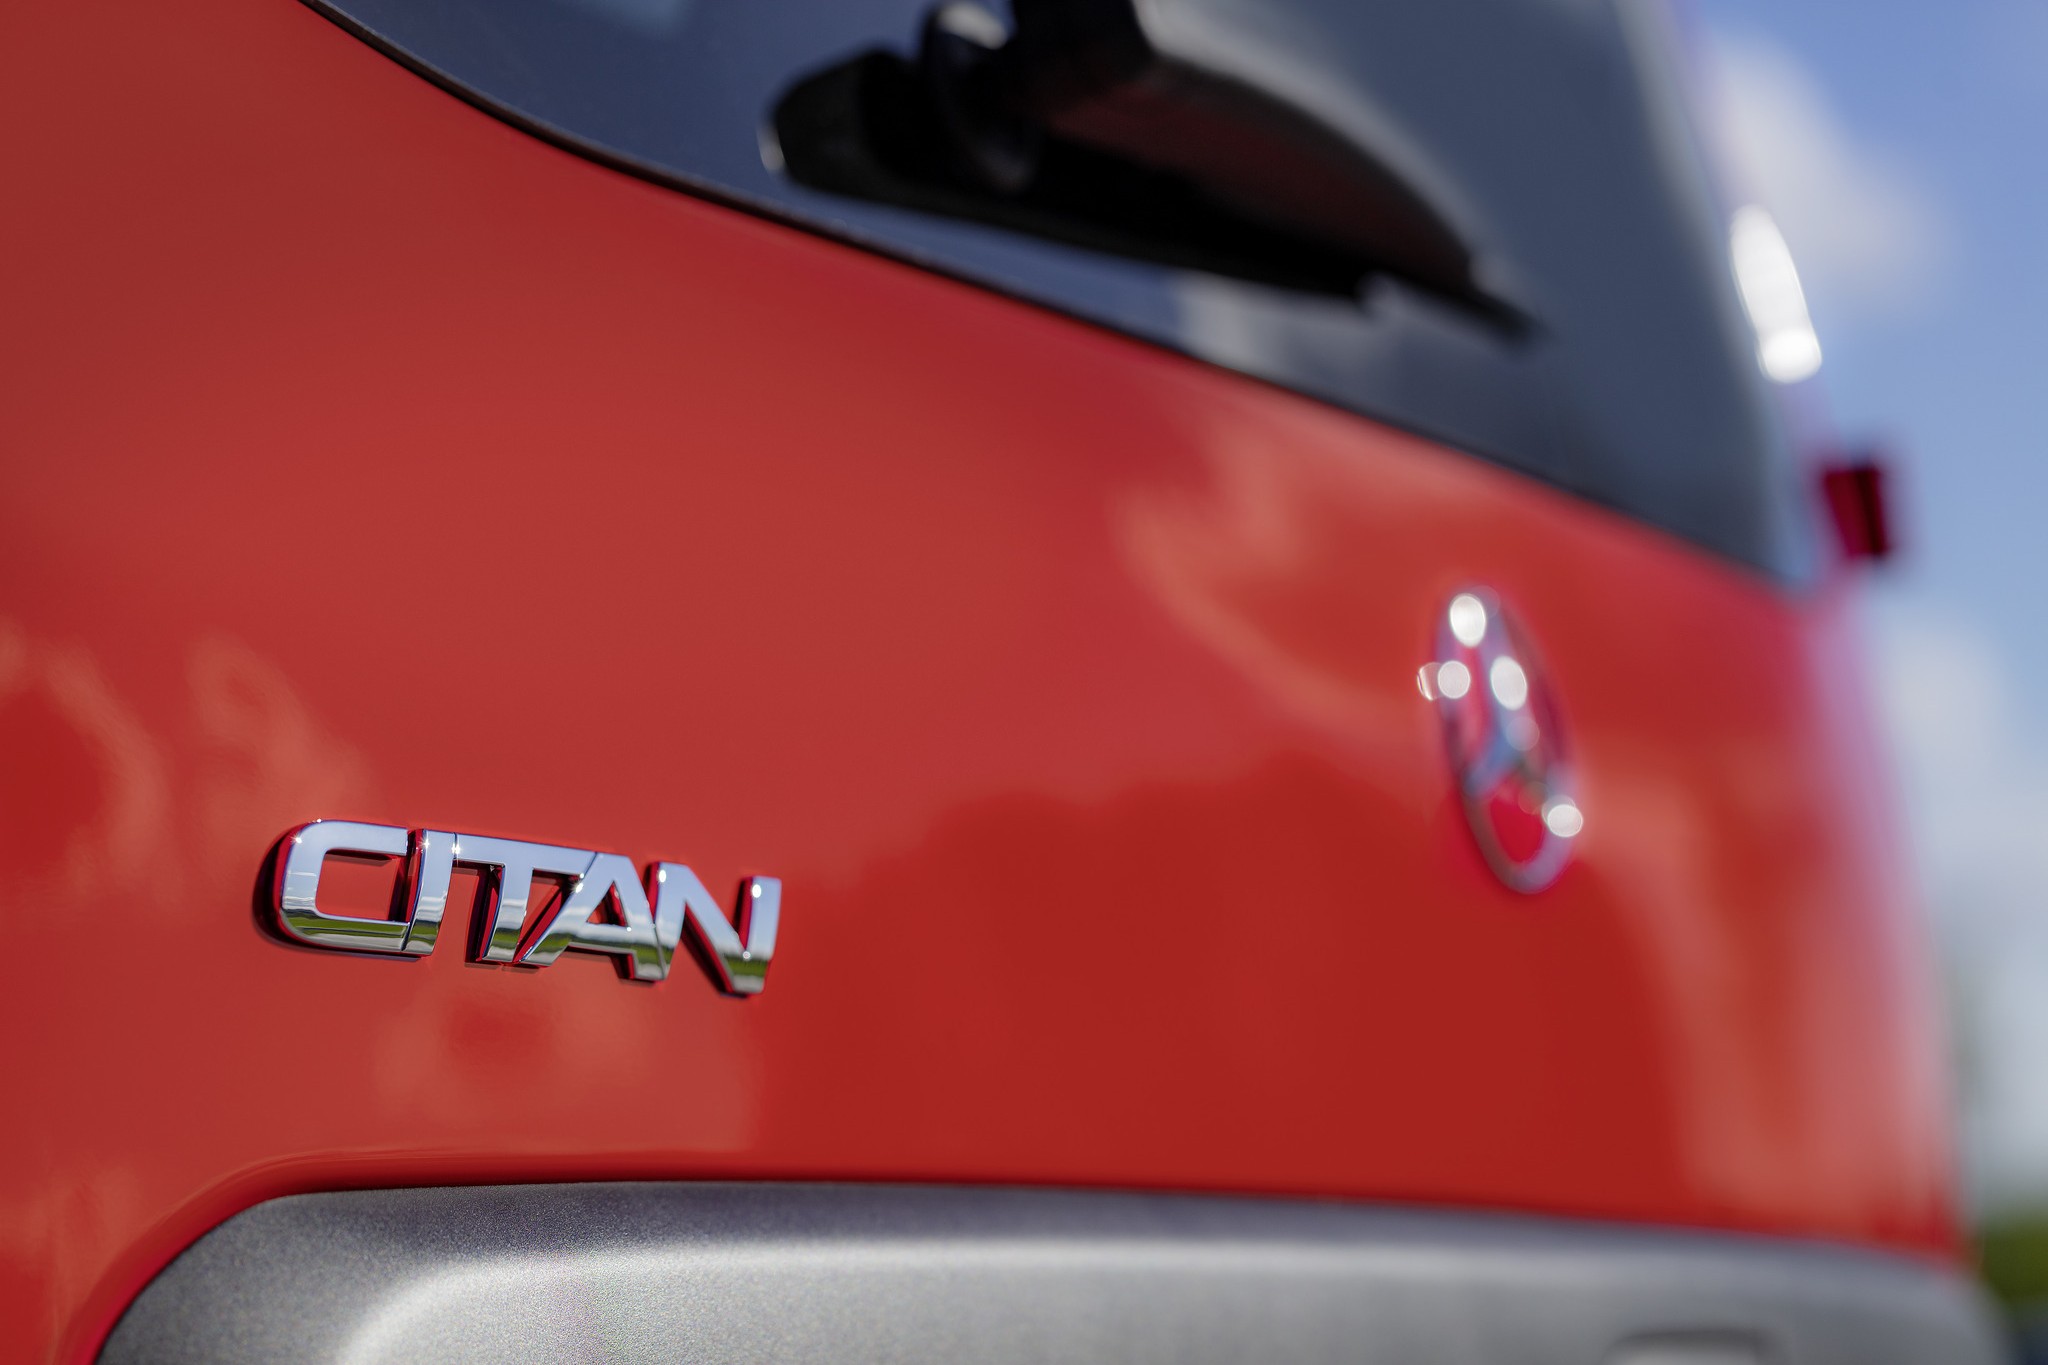 Mehr Details zur neuen Citan Generation von Mercedes-Benz